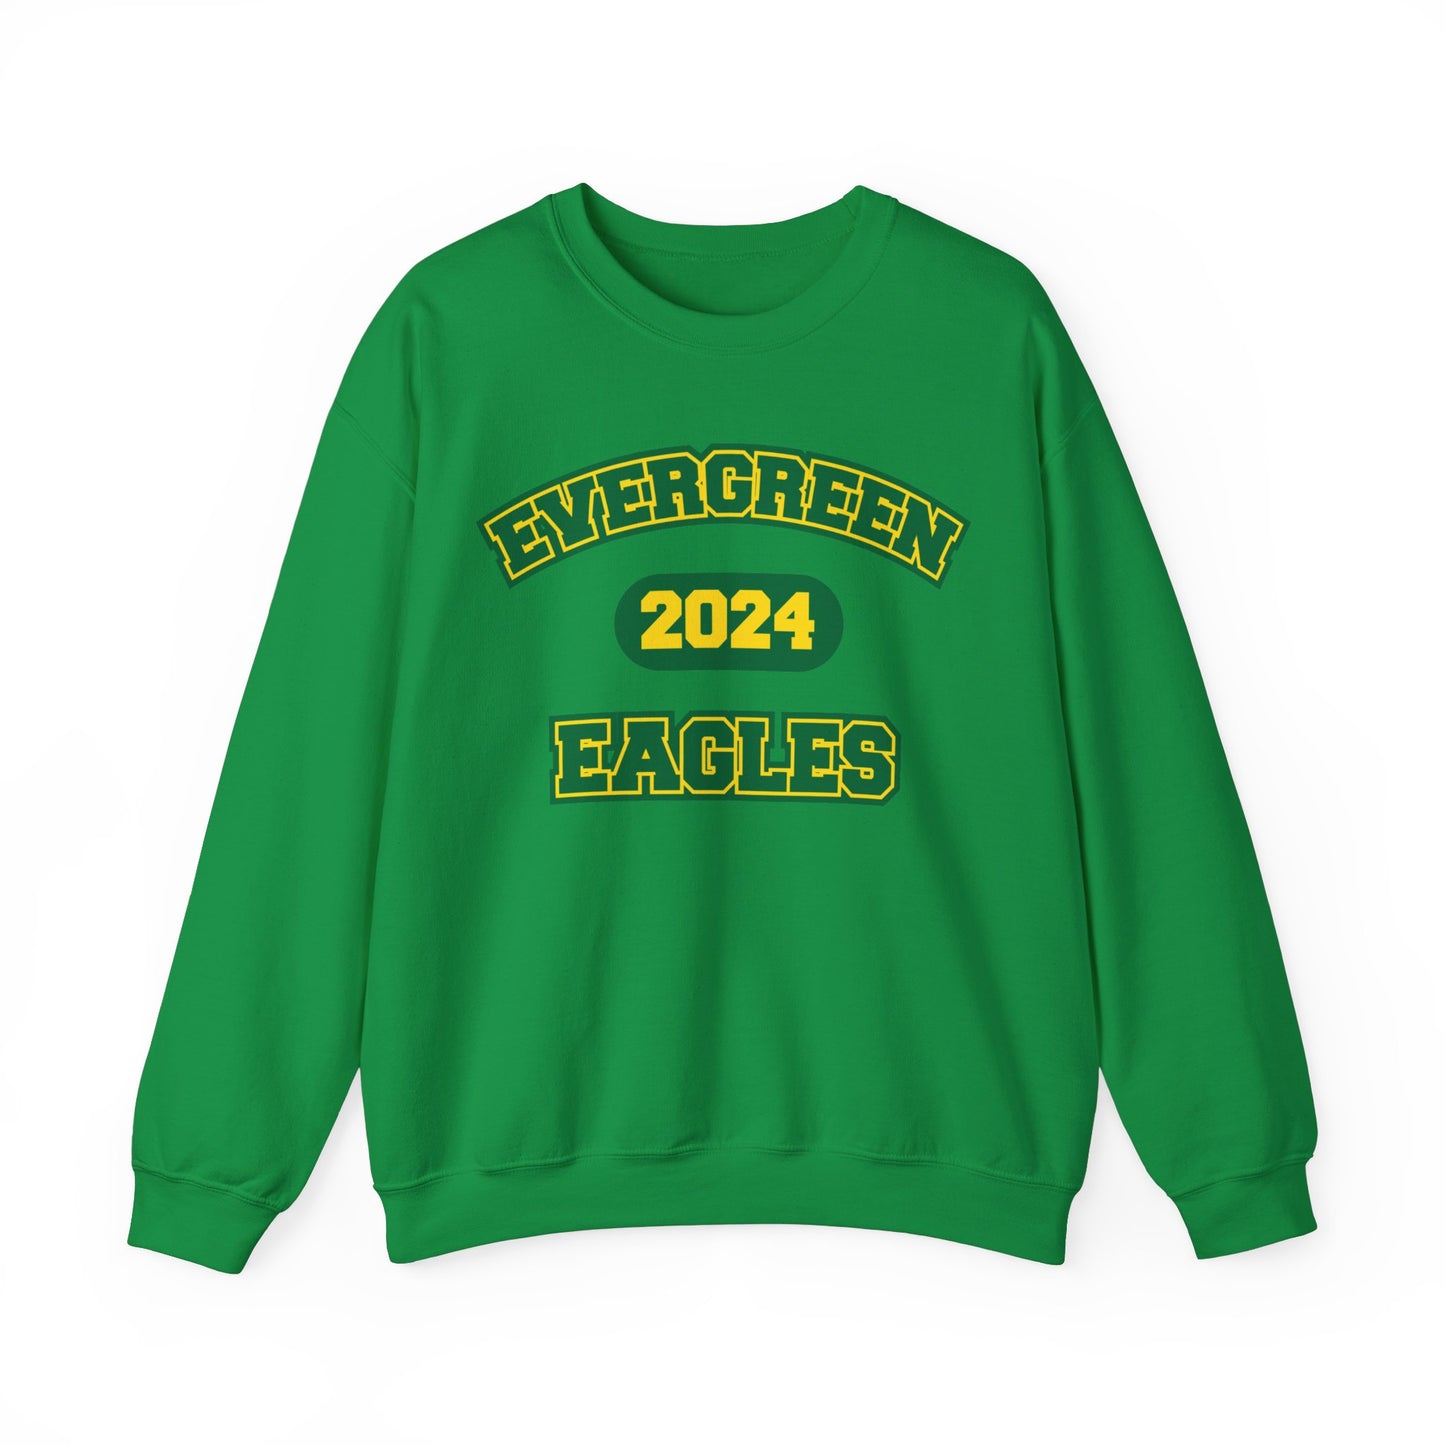 Eagles 2024 Crewneck - Adult